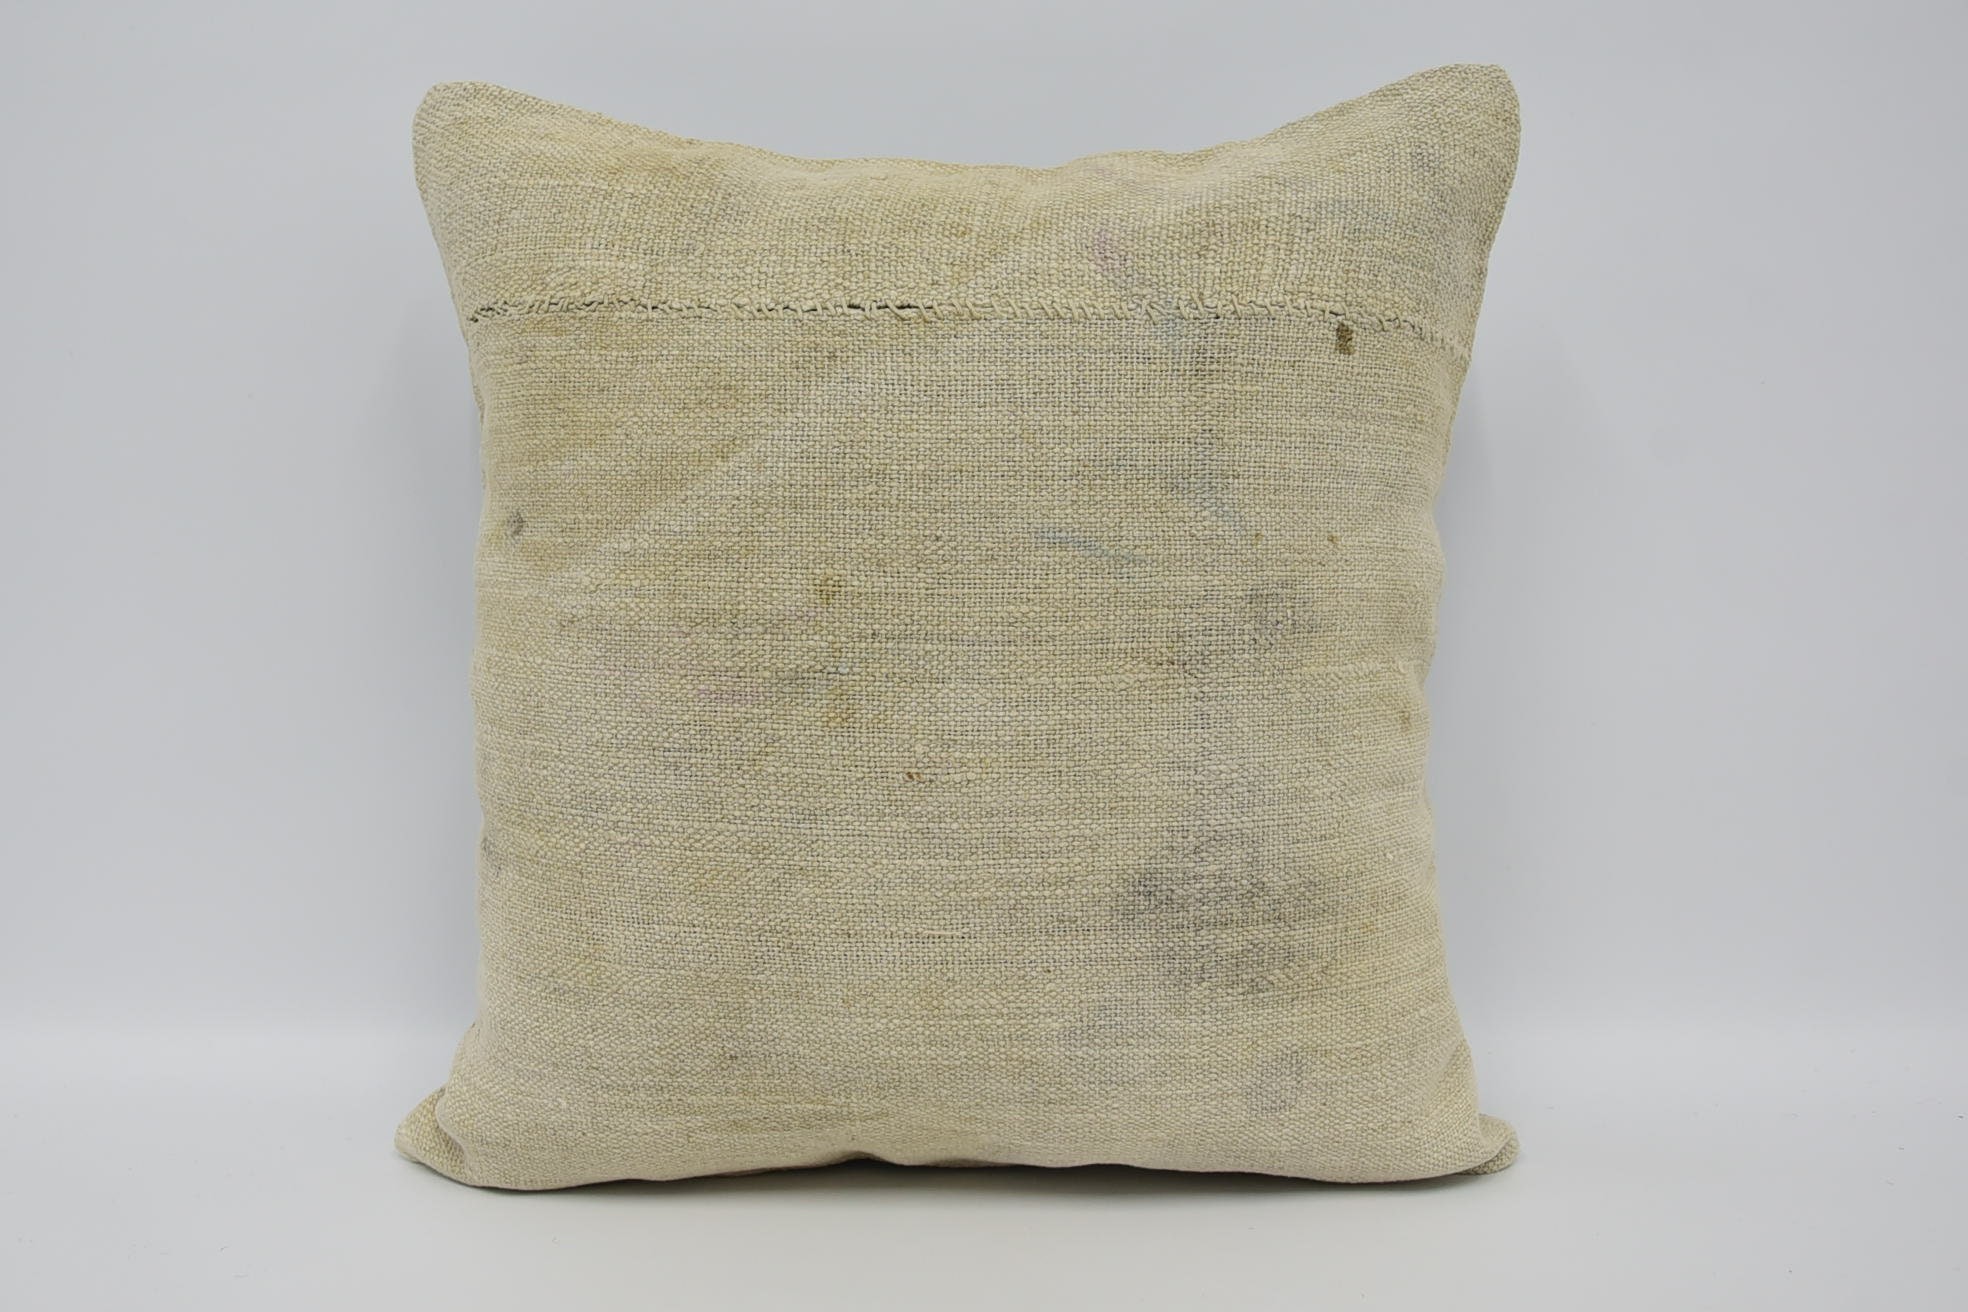 Handmade Kilim Cushion, 18"x18" Beige Pillow Case, Turkish Kilim Pillow, Cozy Throw Pillow Sham, Pillow for Couch